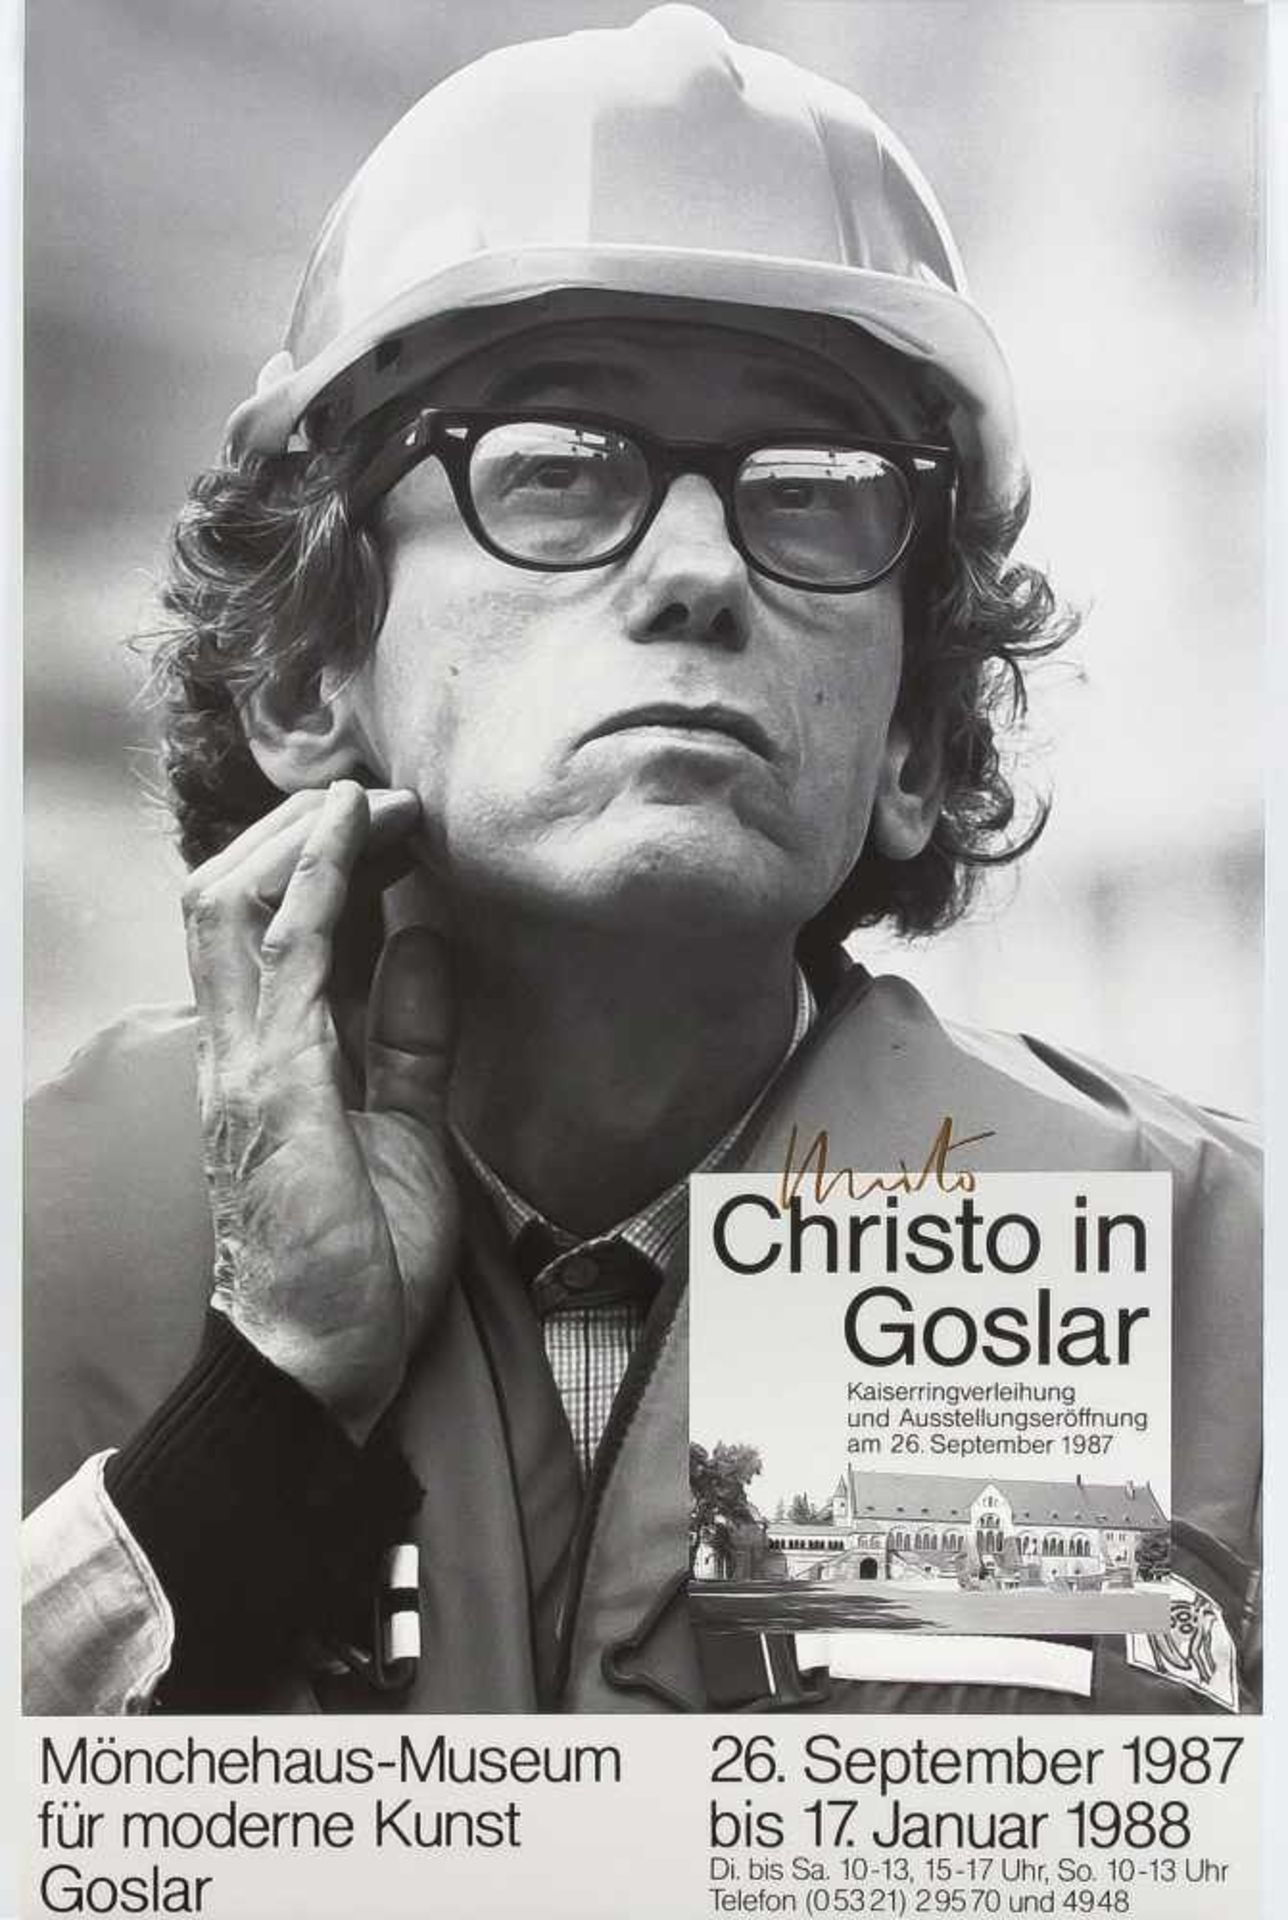 Christo (*1935), Konvolut von zwei handsignierten Postern, "Christo in Goslar" 1987,handsign. in